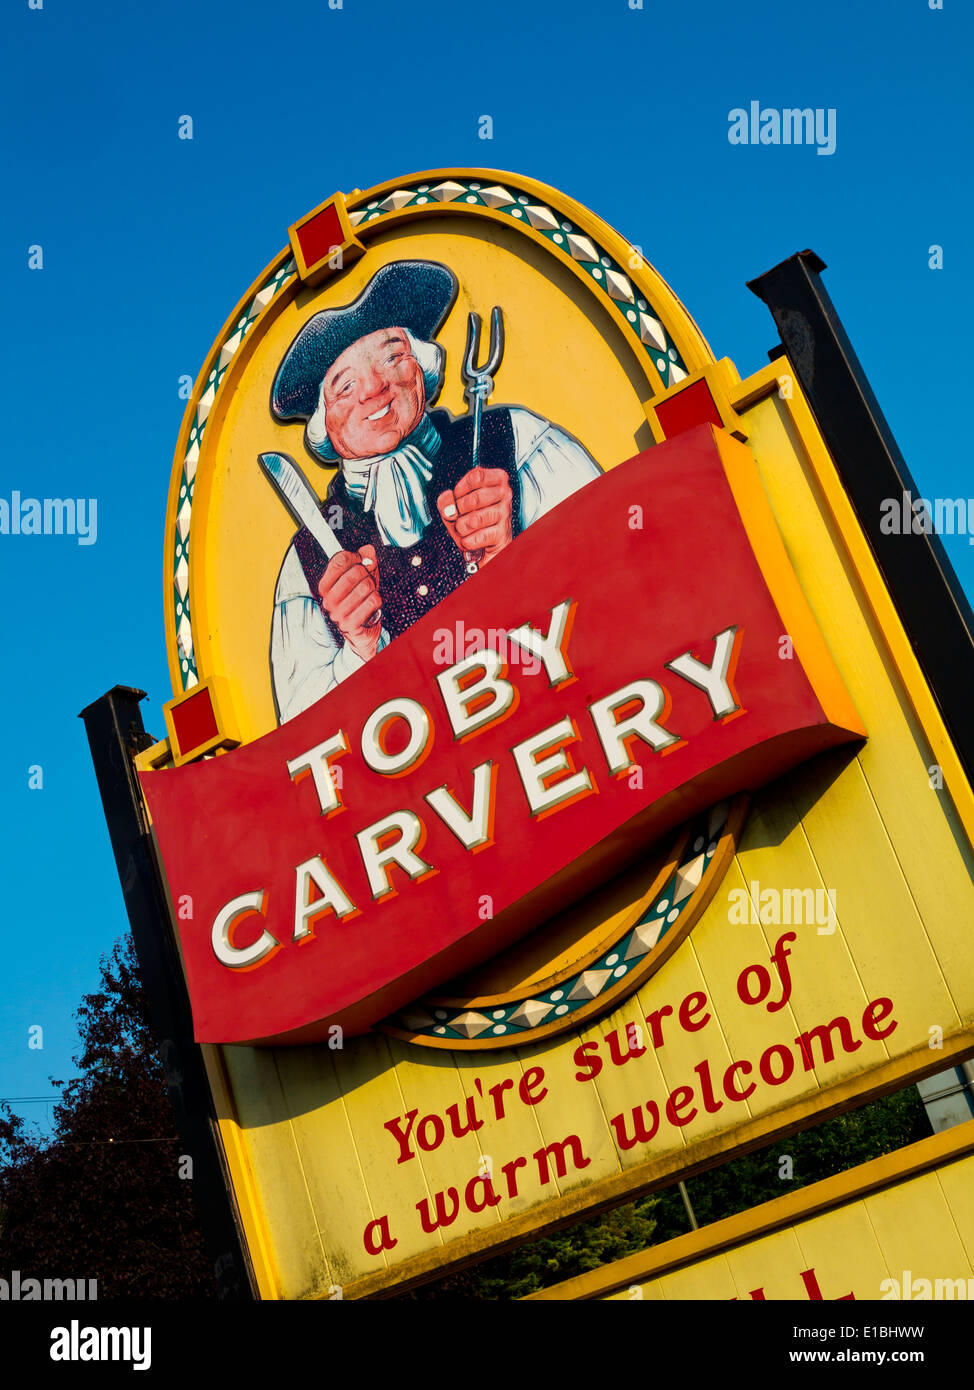 Toby Carvery firmare al di fuori di un pub in Redhill Surrey in Inghilterra parte di un British carvery il marchio della catena di proprietà di Mitchells e maggiordomi Foto Stock